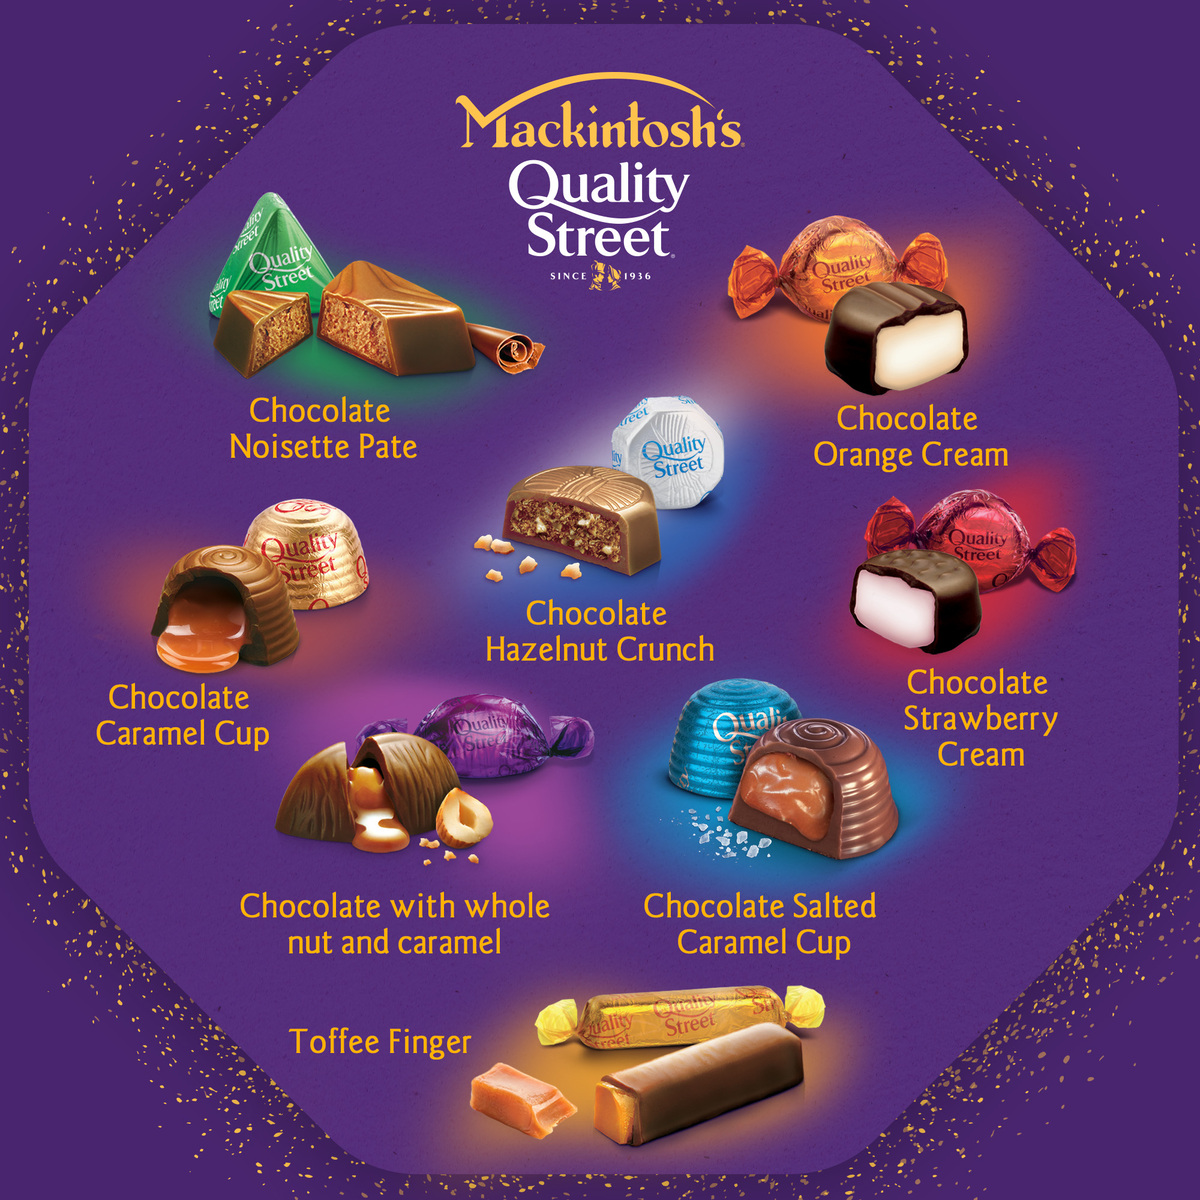 Mackintosh's Quality Street Chocolate 600 g